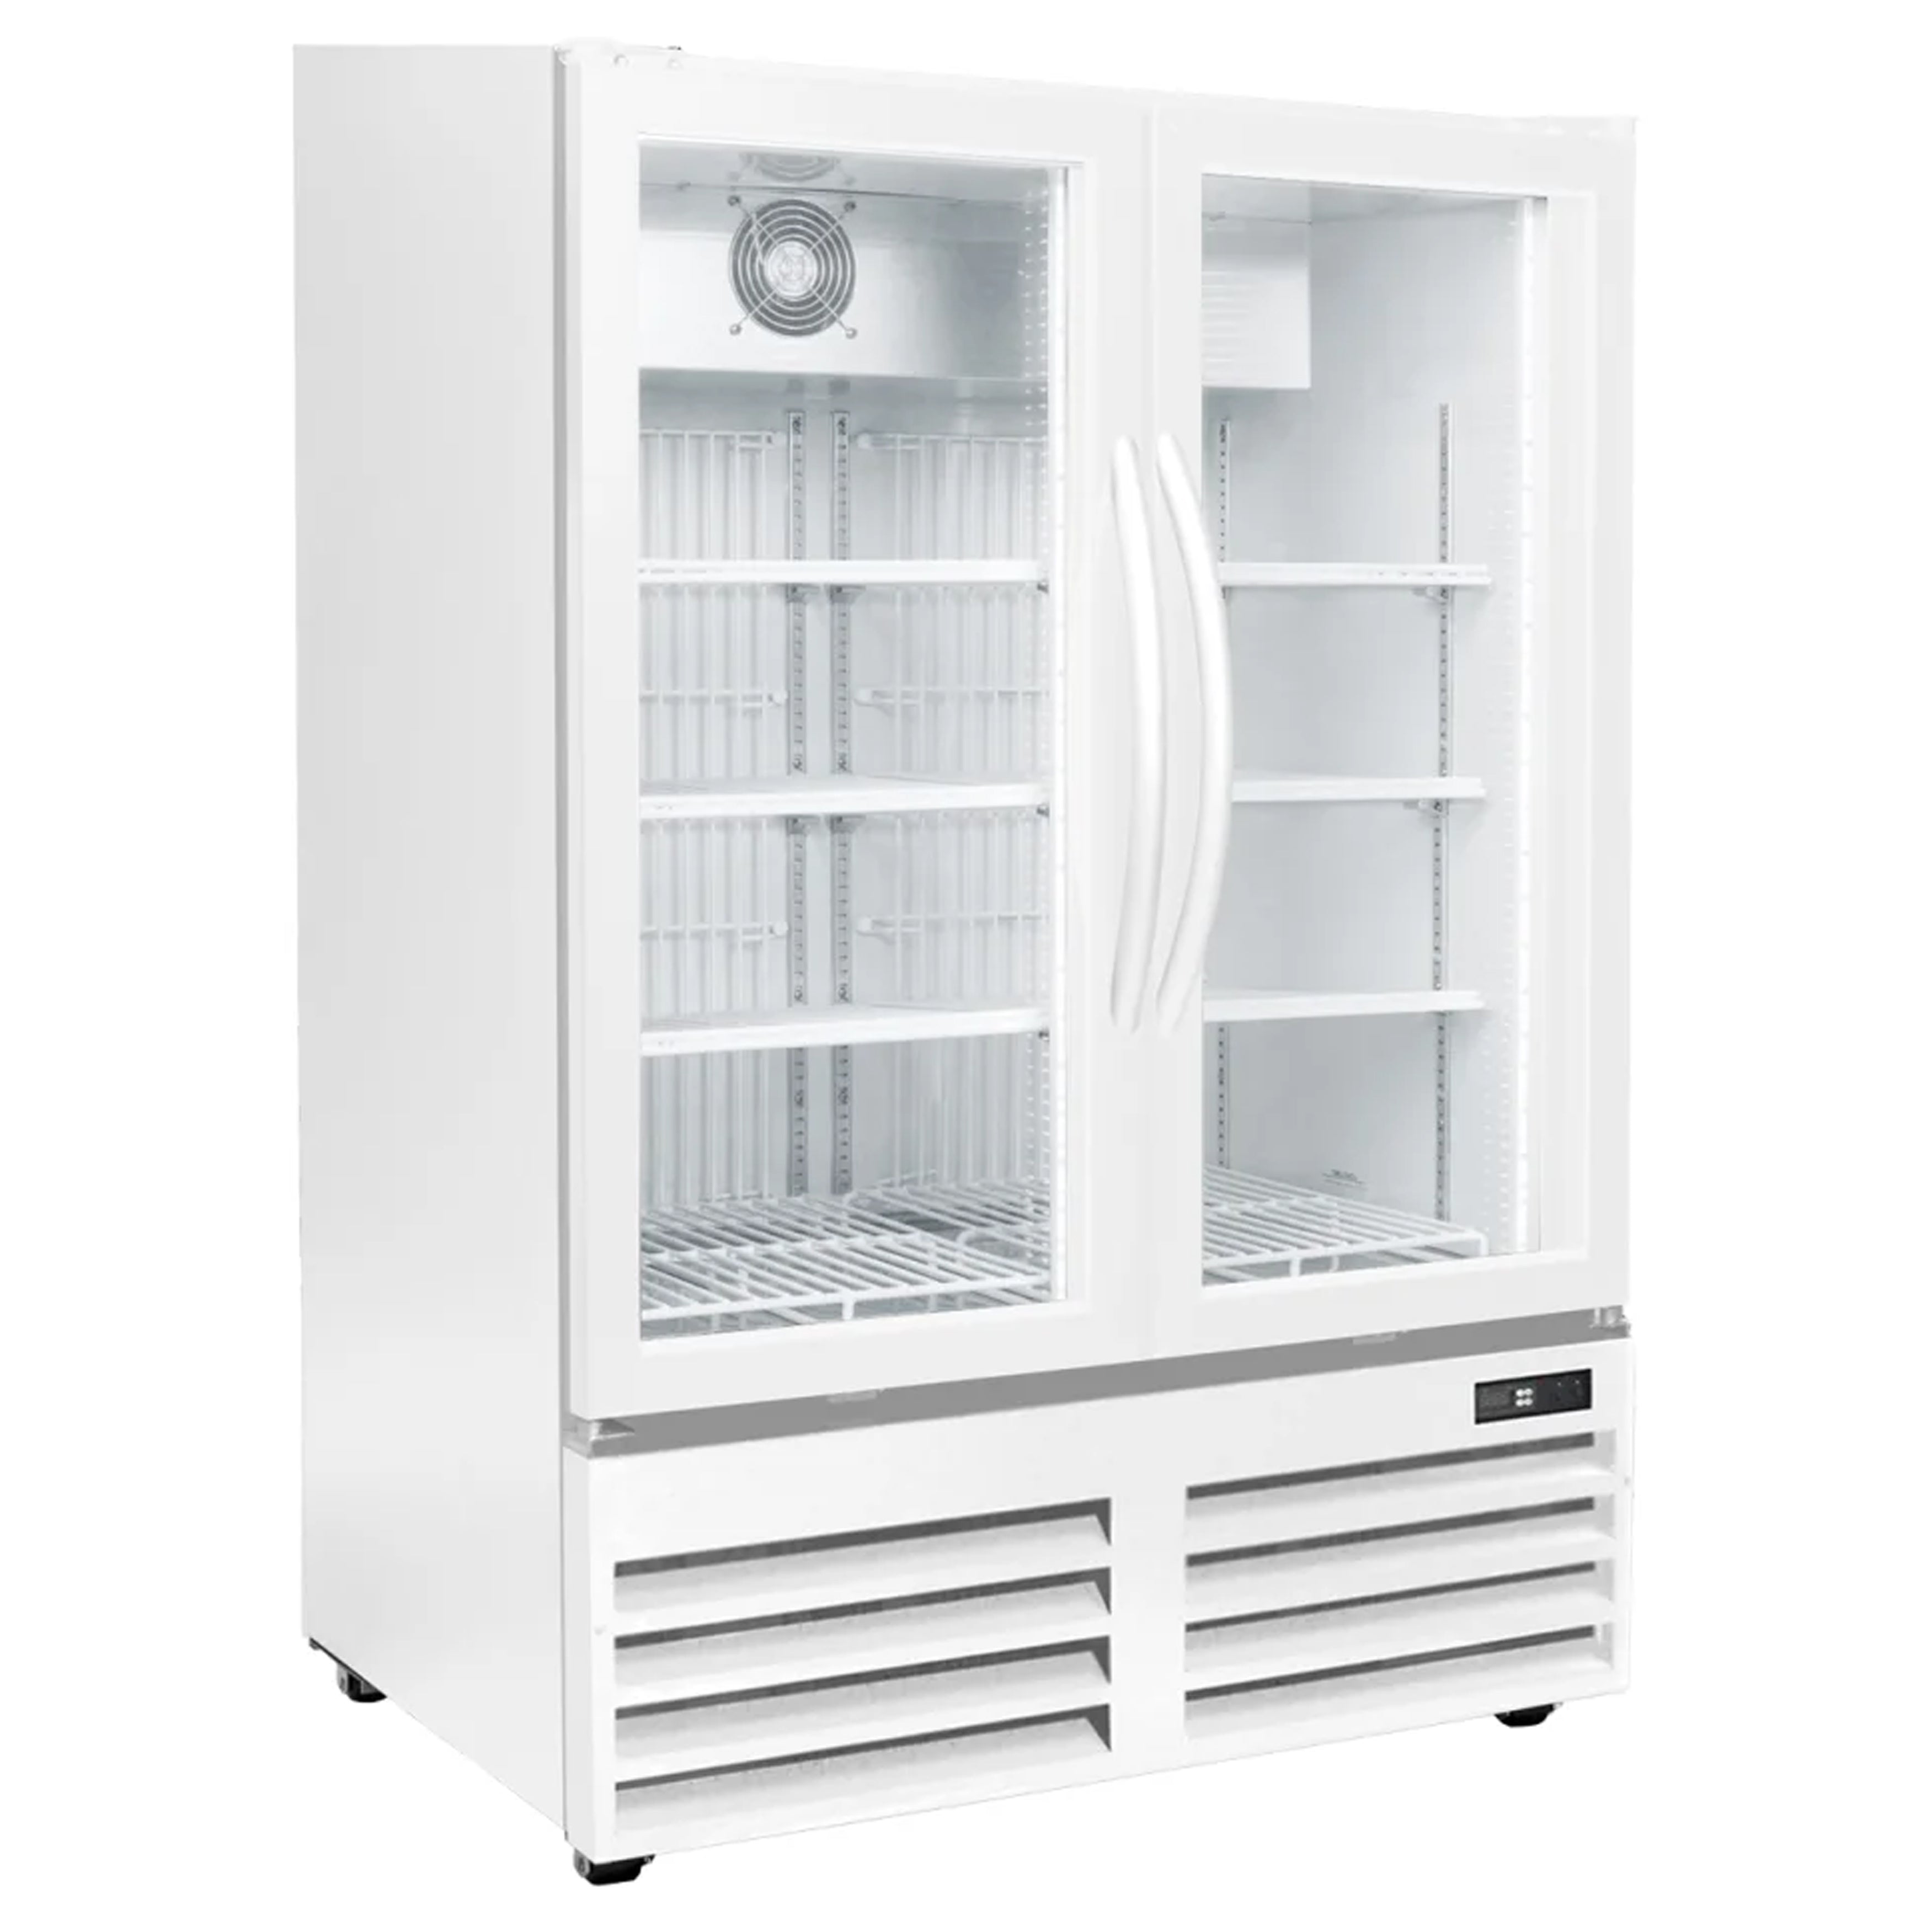 Excellence Industries - GDF-15 36" Commercial 2 Glass Door Merchandiser Refrigerator 14.1 cu.ft.